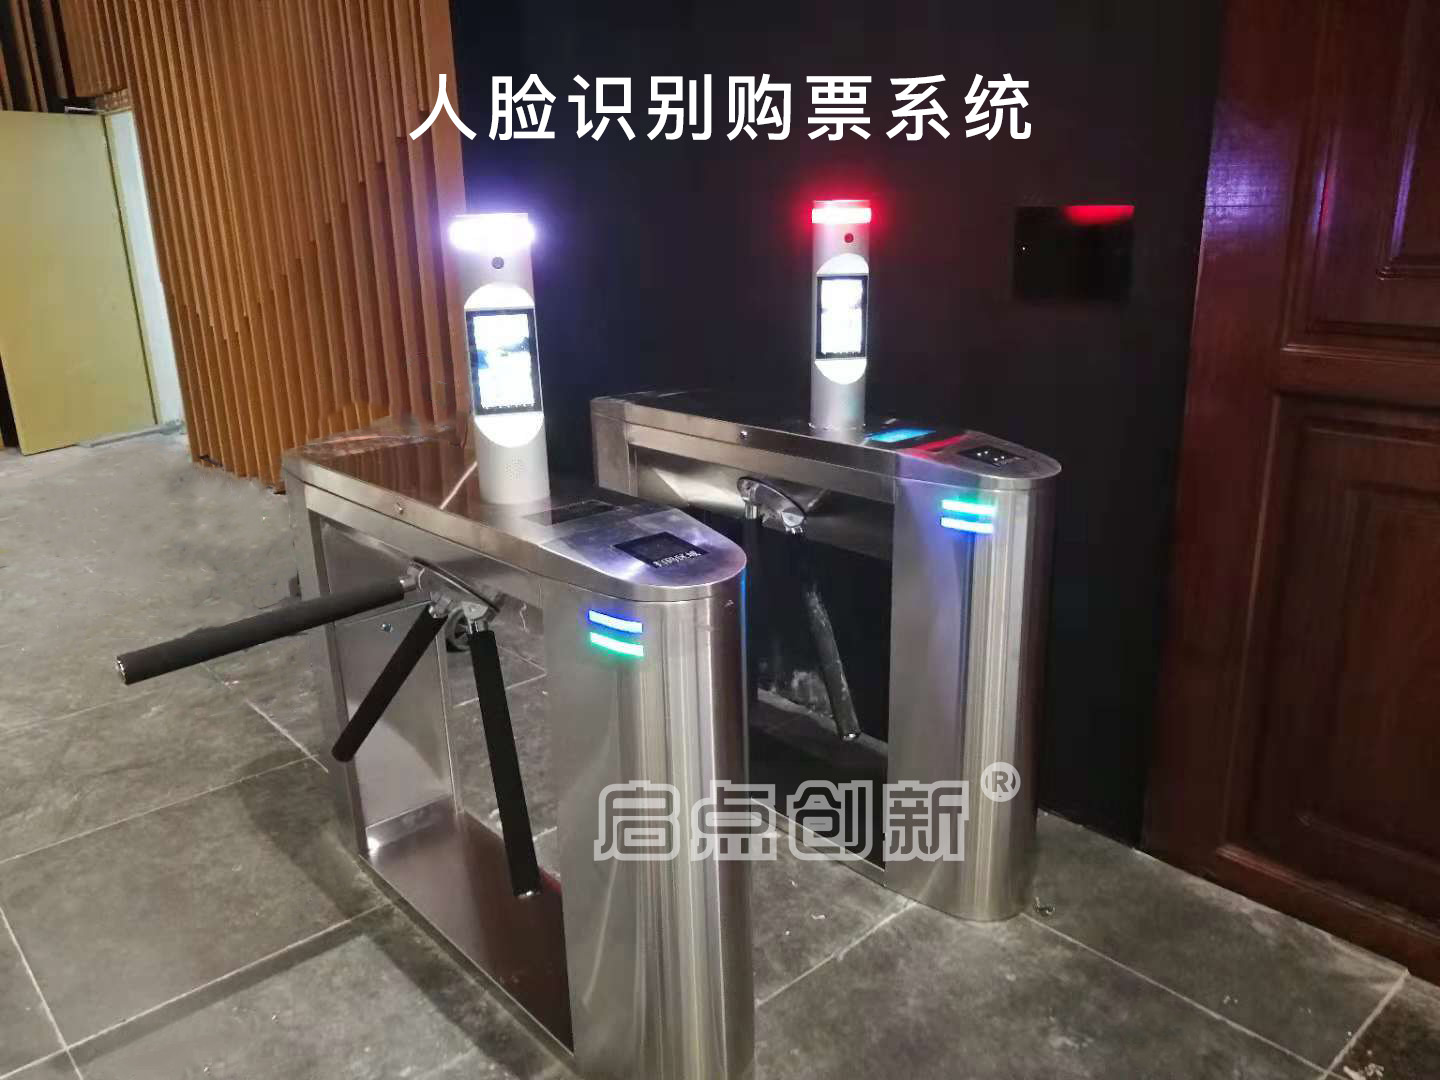 广西省河池市大化县奇石博物馆人脸识别购票系统